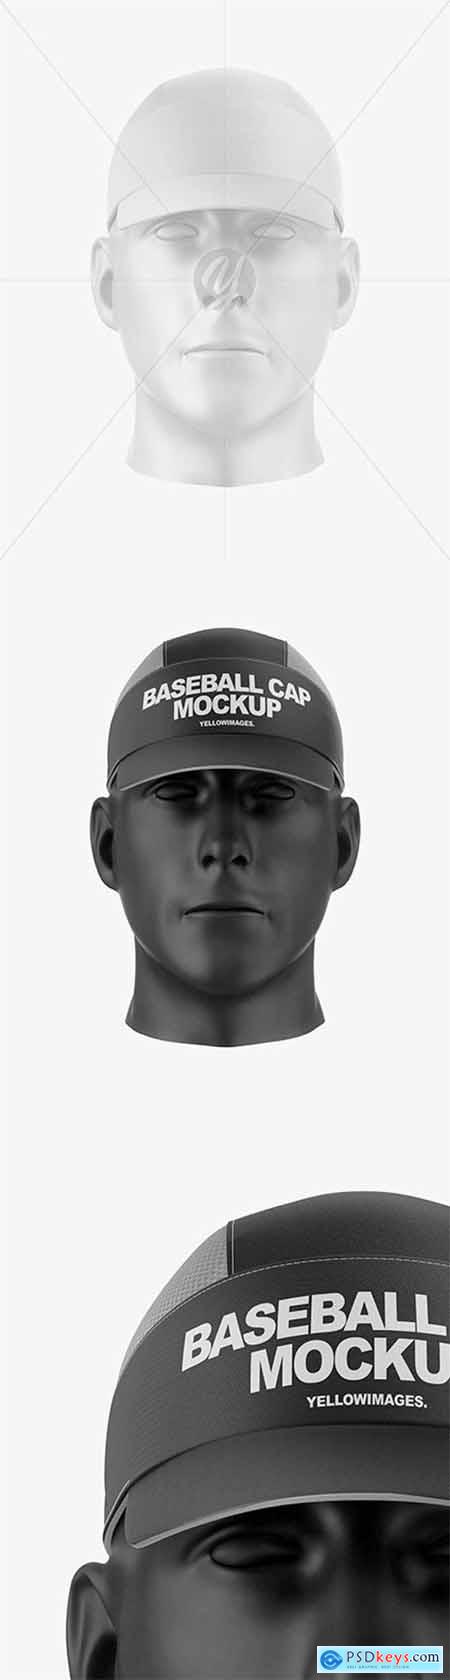 Baseball Cap Mockup 61012